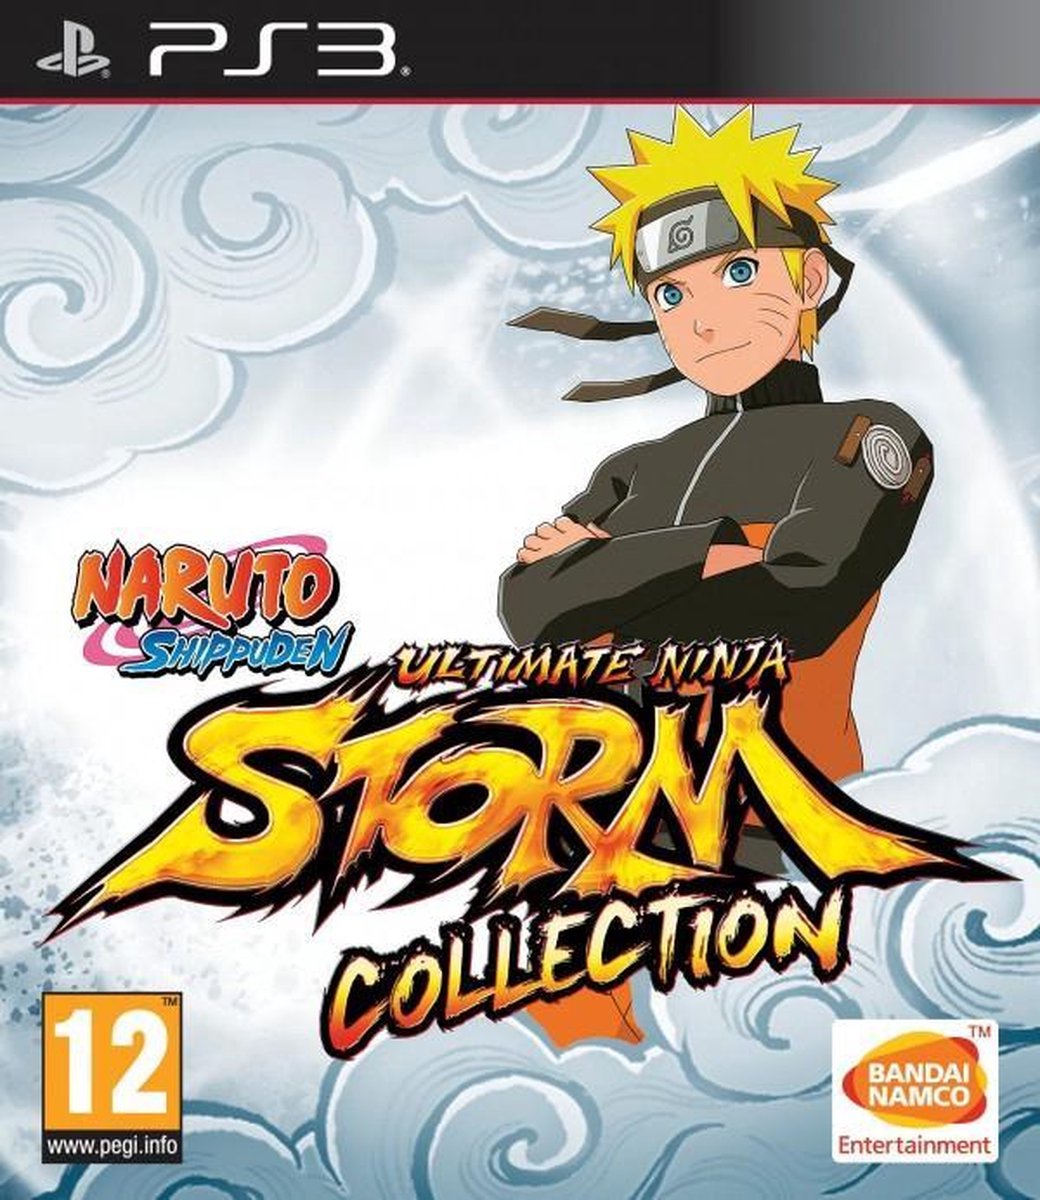 Namco Naruto Shippuden Ultimate Ninja Storm Collection